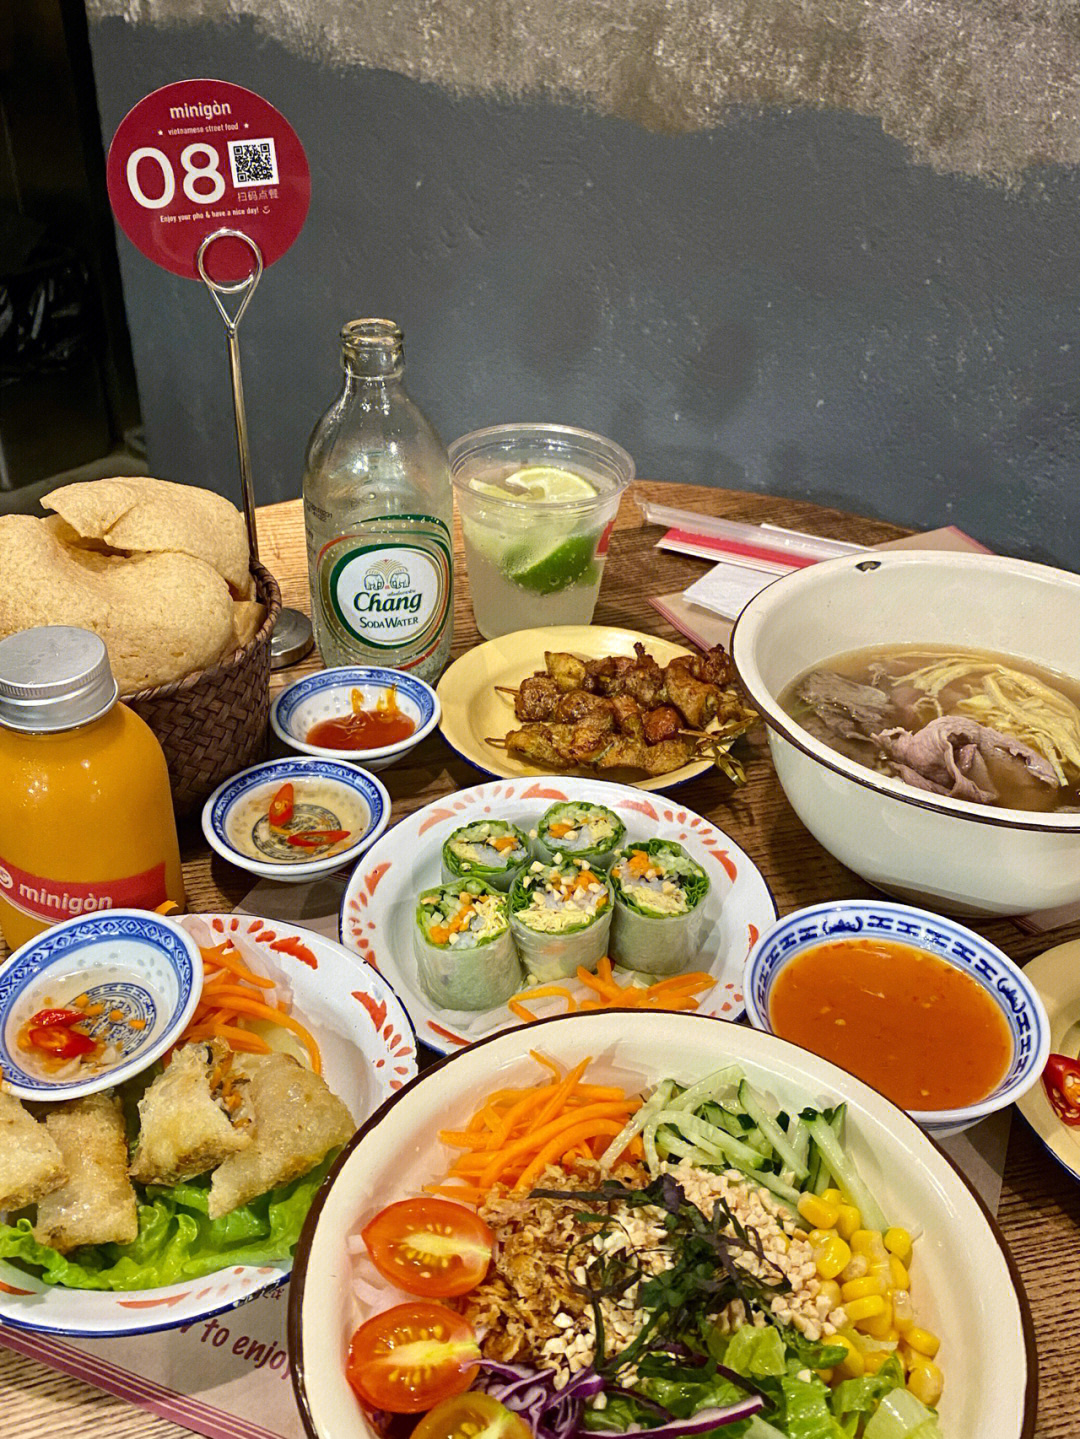 西贡西贡菜单图片